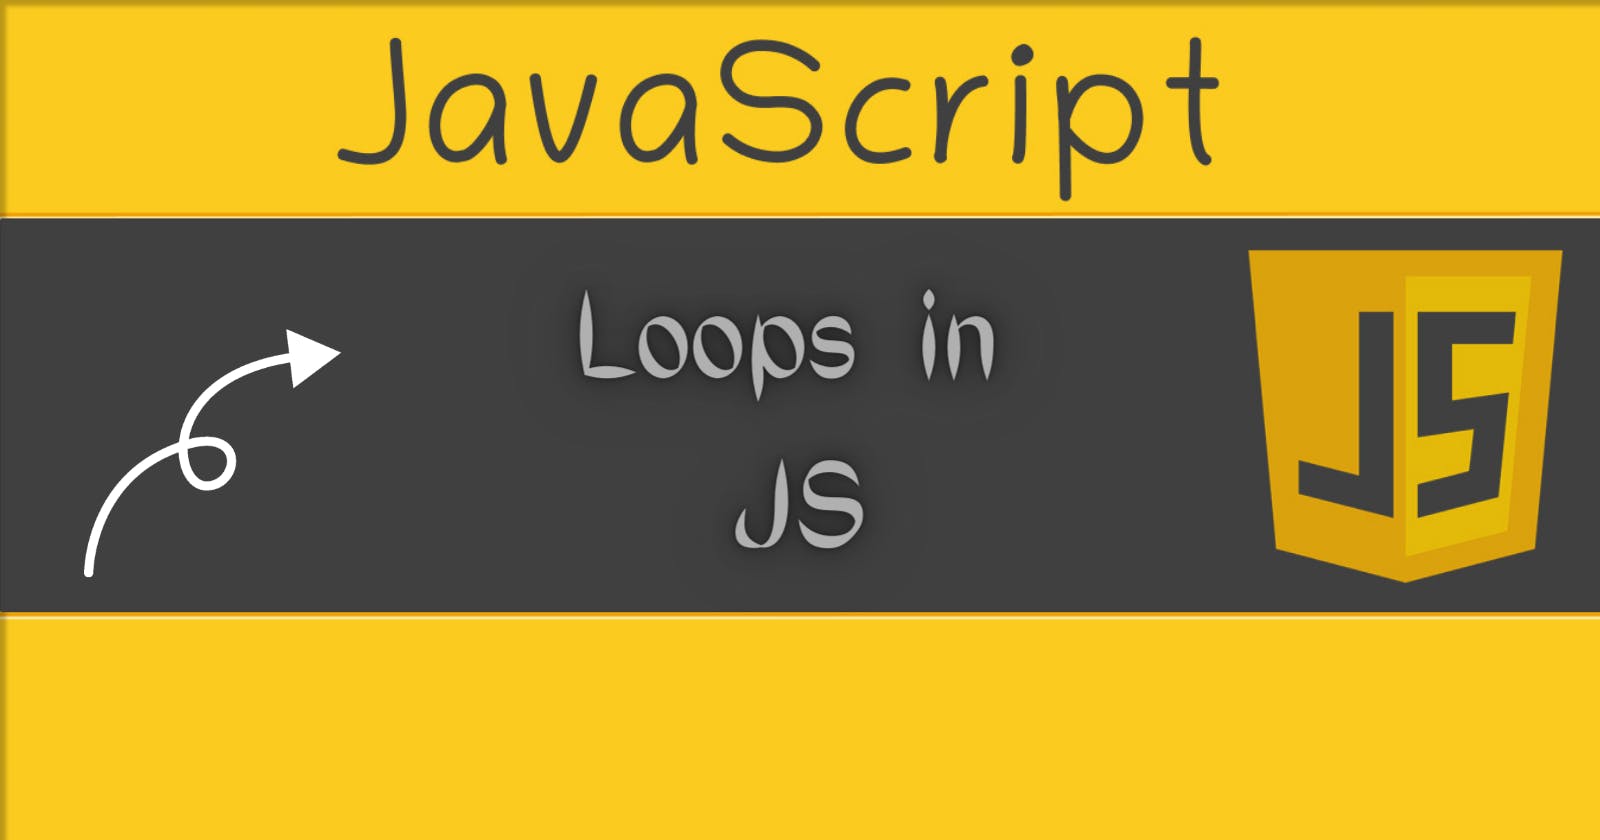 Loops in JS